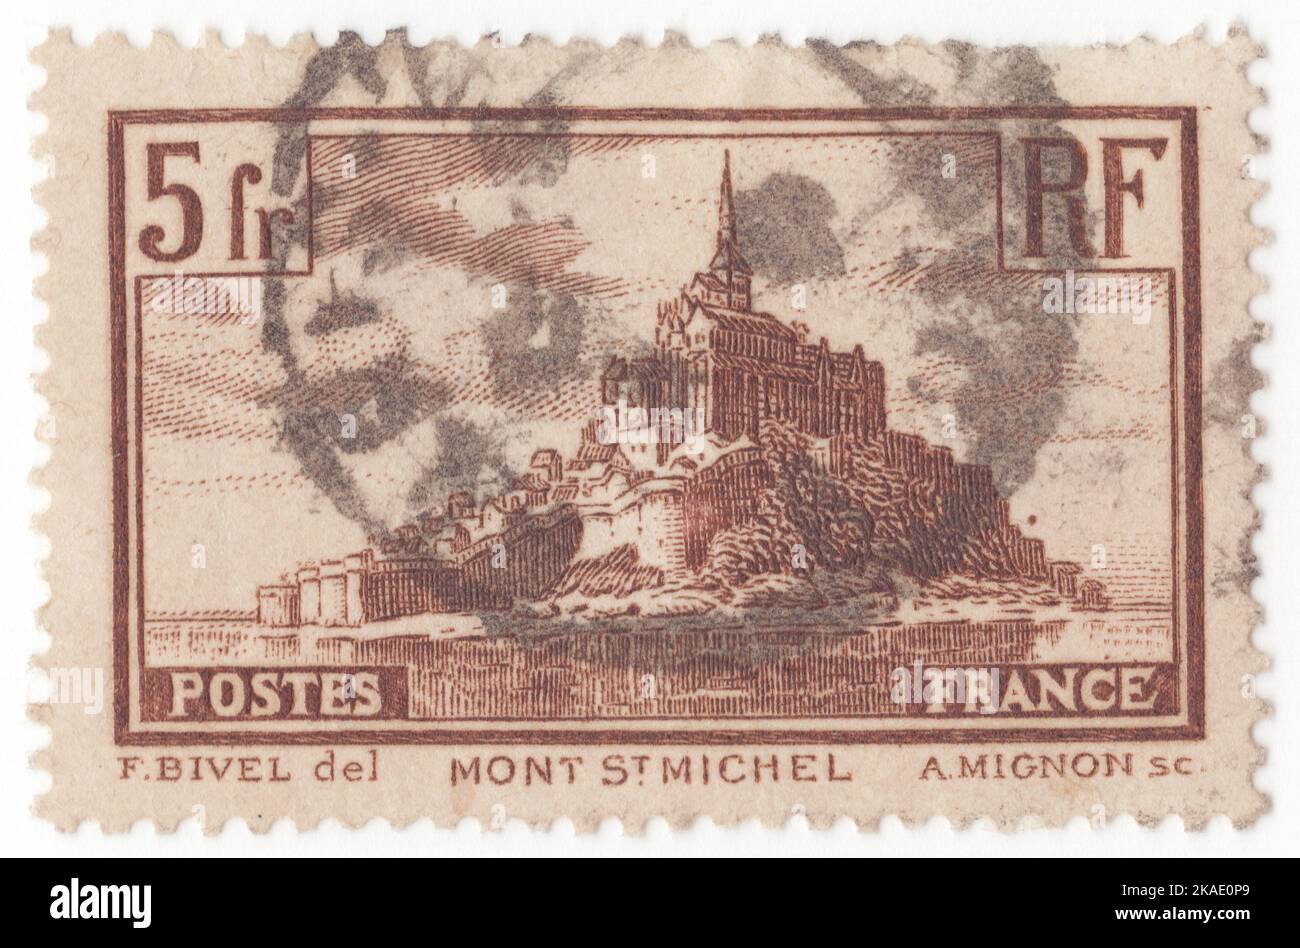 FRANKREICH - 1931: Eine braune Briefmarke mit 5 Franken, die den Mont-Saint-Michel darstellt, ist eine Gezeiteninsel und eine Gemeinde auf dem Festland in der Normandie, Frankreich. Die Lage der Gemeinde – auf einer Insel, die nur wenige hundert Meter vom Land entfernt liegt – machte sie bei Ebbe für die vielen Pilger ihrer Abtei zugänglich, aber sie war vertretbar, als eine ankommende Flut gestrandet, abfuhr oder anbetungsfähige Angreifer ertrank. Die Insel blieb während des Hundertjährigen Krieges unbesiegt; eine kleine Garnison konnte 1433 einen vollständigen Angriff der Engländer abwehren. Louis XI. Erkannte die umgekehrten Vorteile seiner natürlichen Verteidigung und verwandelte sie in ein Gefängnis Stockfoto